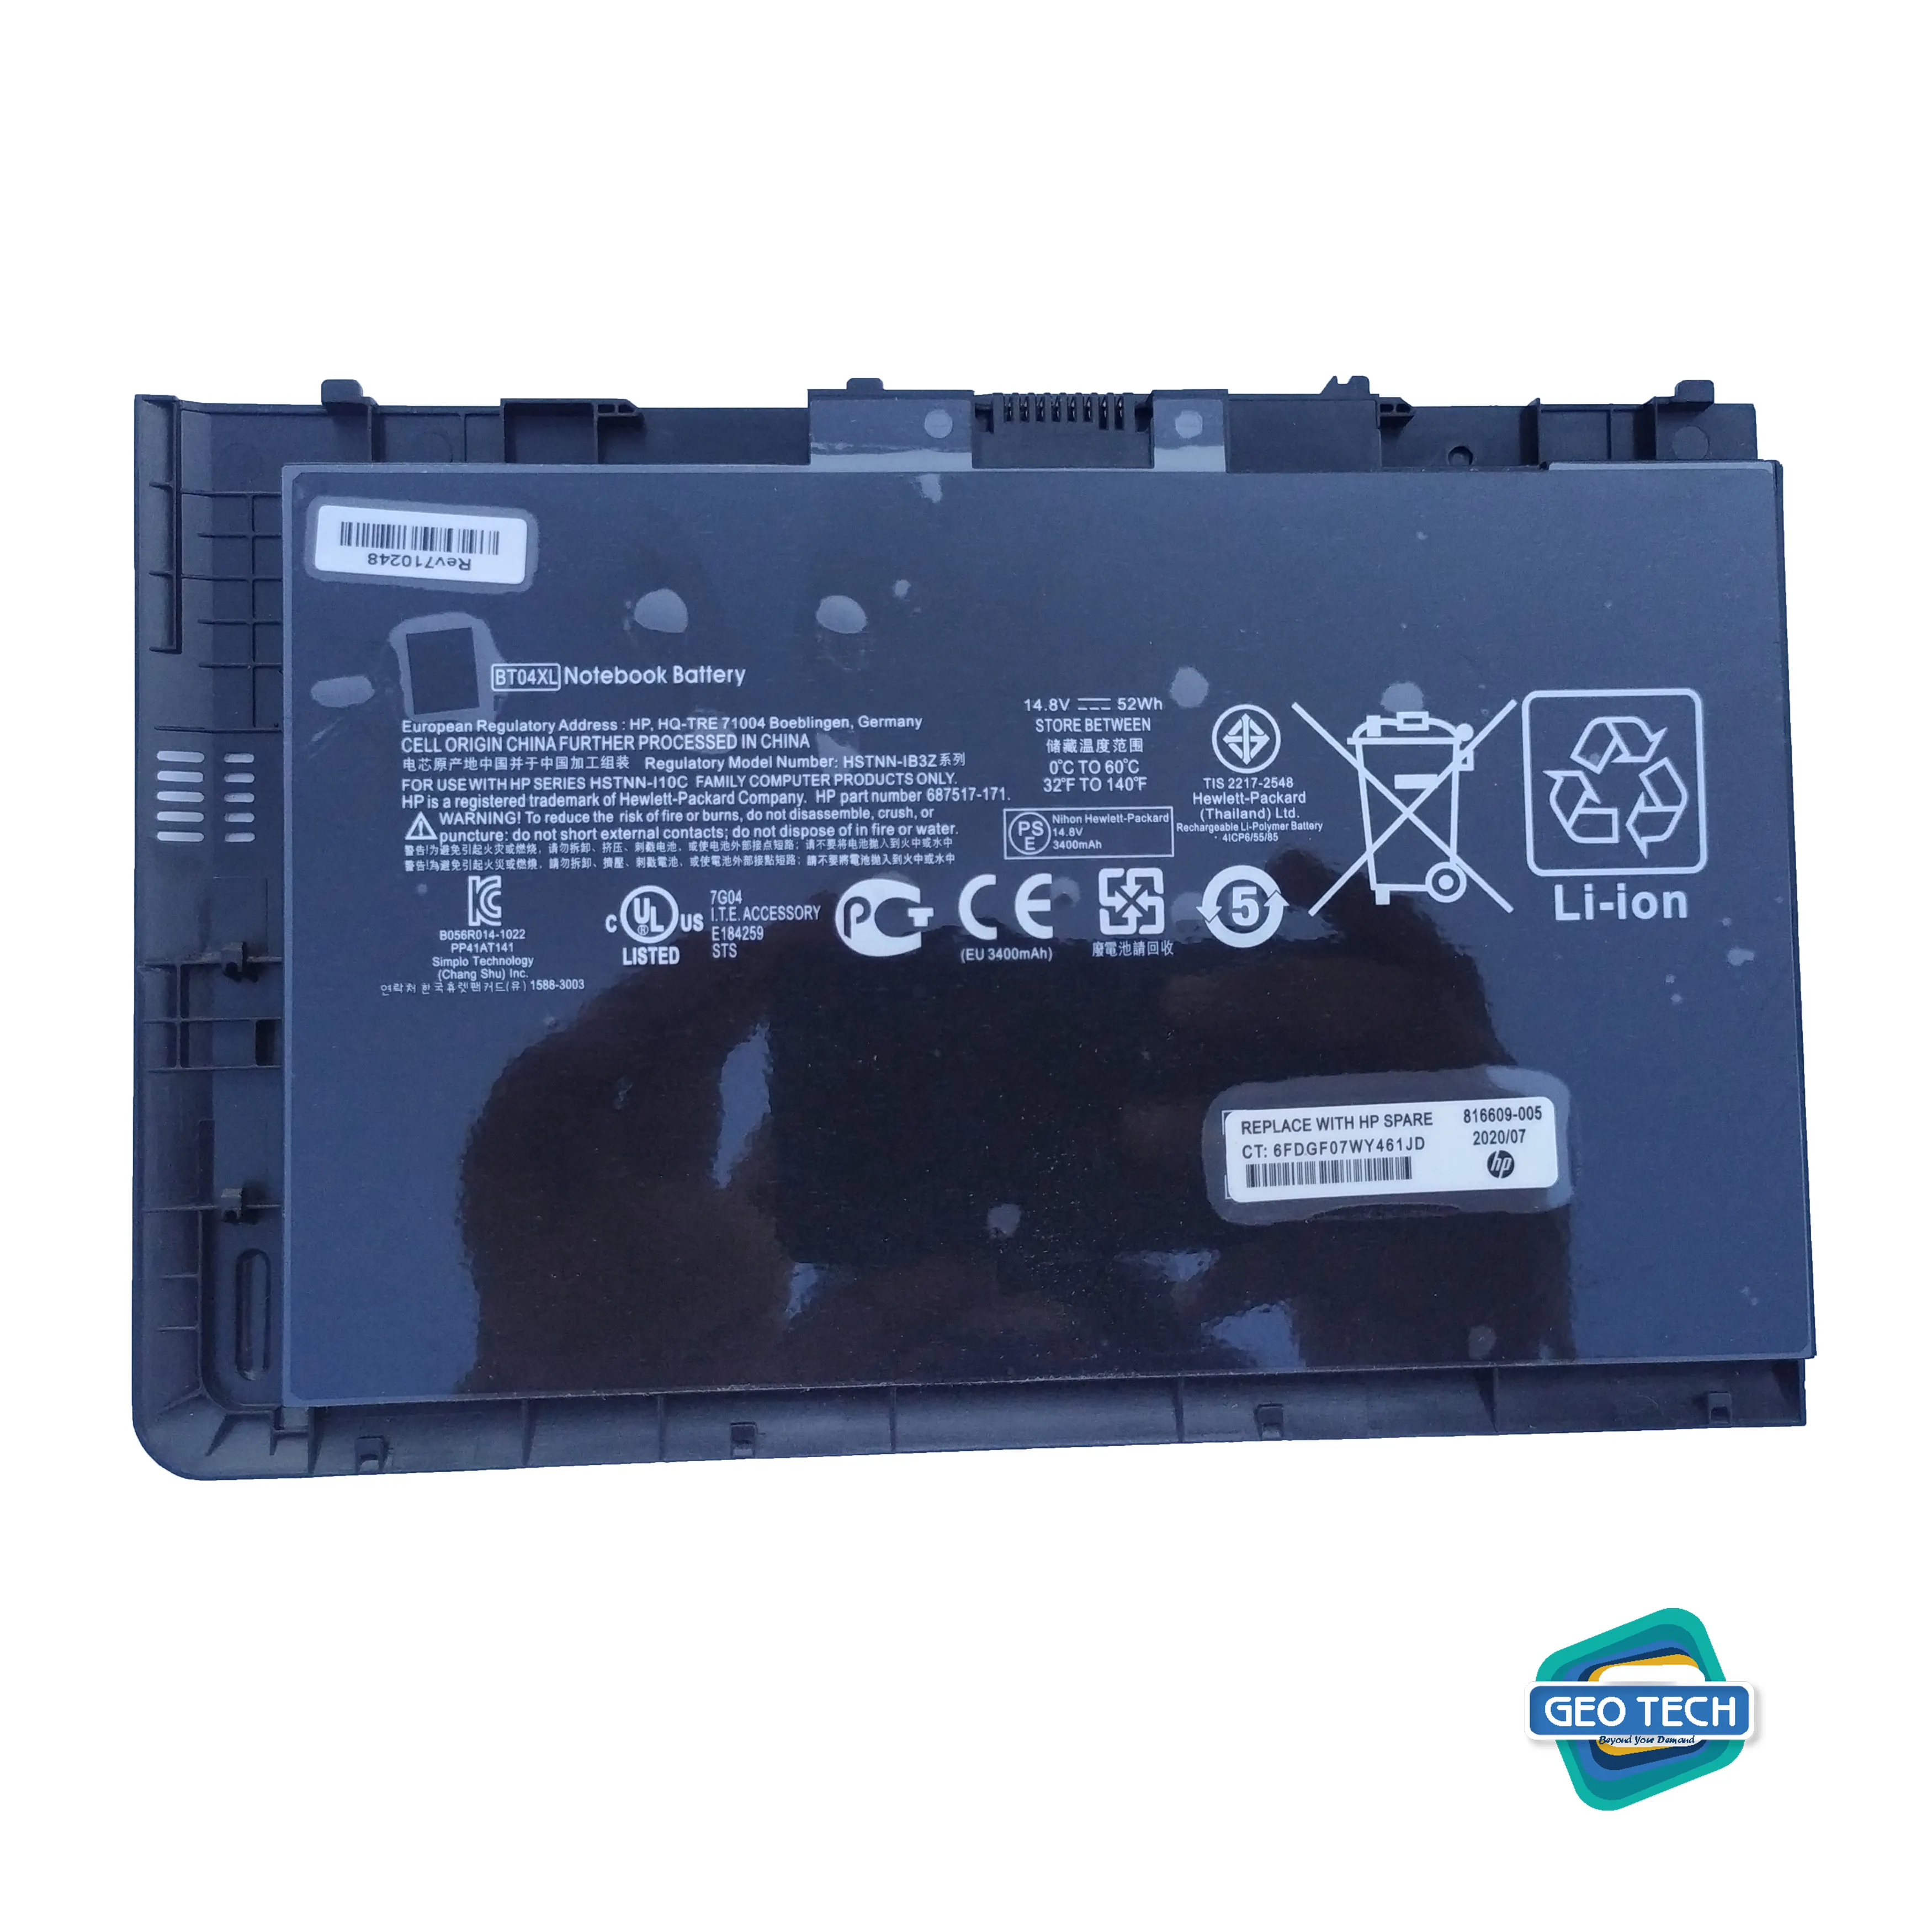 9470m BT04 BT04XL Notebook Battery for HP EliteBook Folio 9470 9470M 9480 9480M Series Ultrabook Laptop fits BA06 BA06XL Battery Spare 687945-001 696621-001 H4Q47AA H4Q48AA